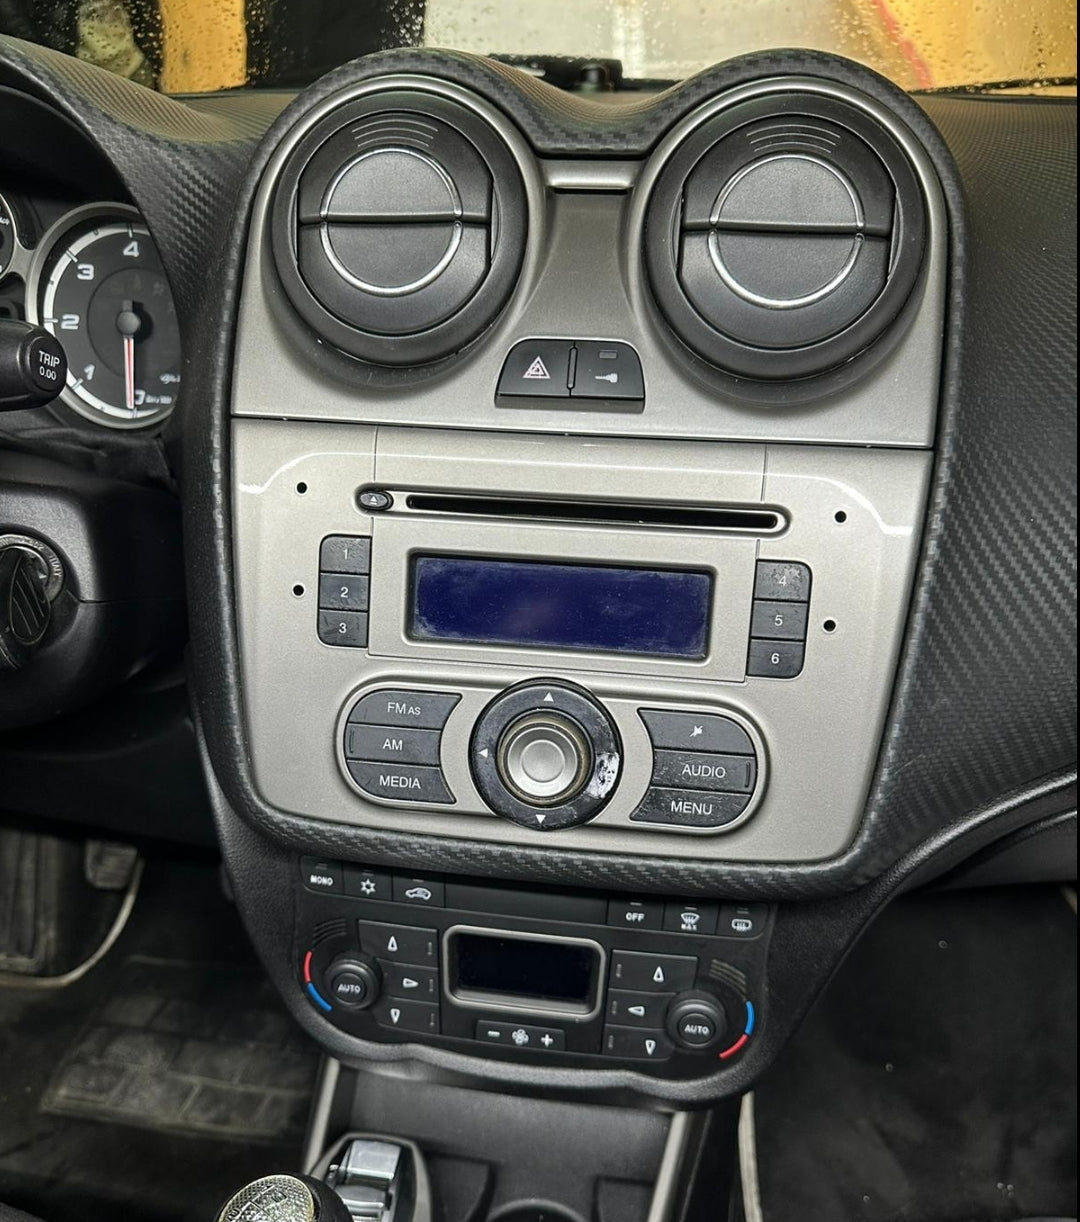 Autoradio per ALFA ROMEO MITO [2008 - 2018] - 1Din, Schermo 7"Pollici Motorizzato, Bluetooth, Radio, USB, Mirror Link per Android